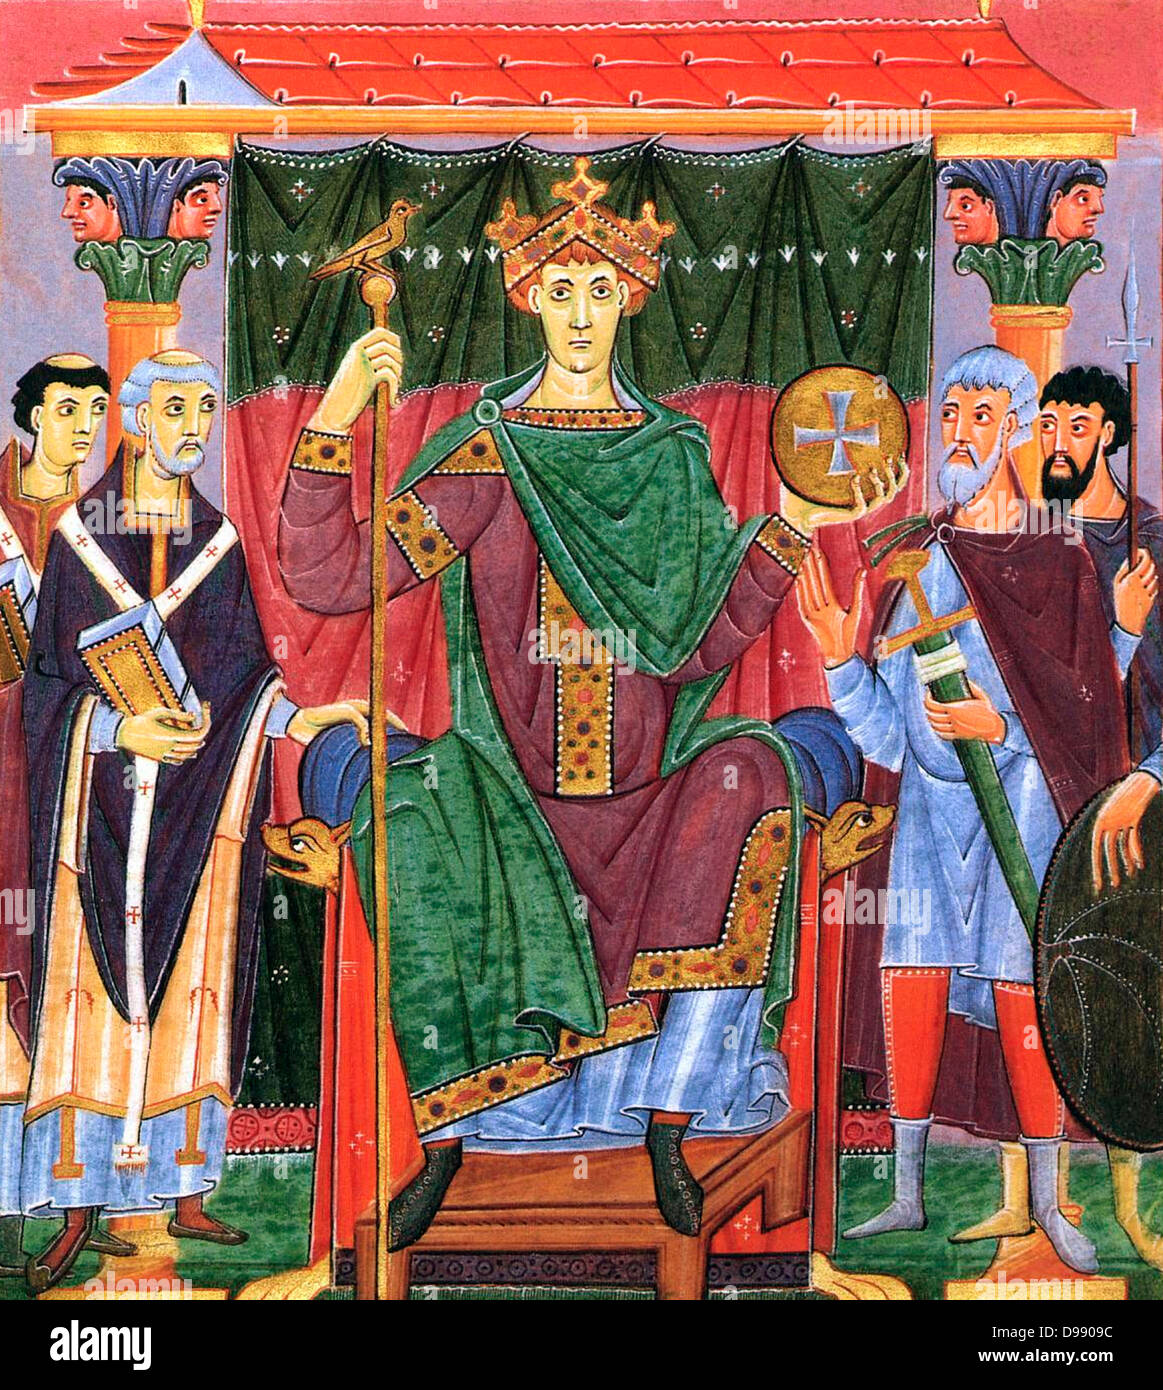 Kaiser Otto III. auf seinen Thron. Otto III (980 - 23. Januar 1002), König von Deutschland, war der vierte Herrscher der Sächsischen oder Ottonischen Dynastie des Heiligen Römischen Reiches. Und er wurde König in 983 gewählt nach dem Tod seines Vaters Otto II. und wurde gekrönt Kaiser des Heiligen Römischen Reiches in 996 Stockfoto